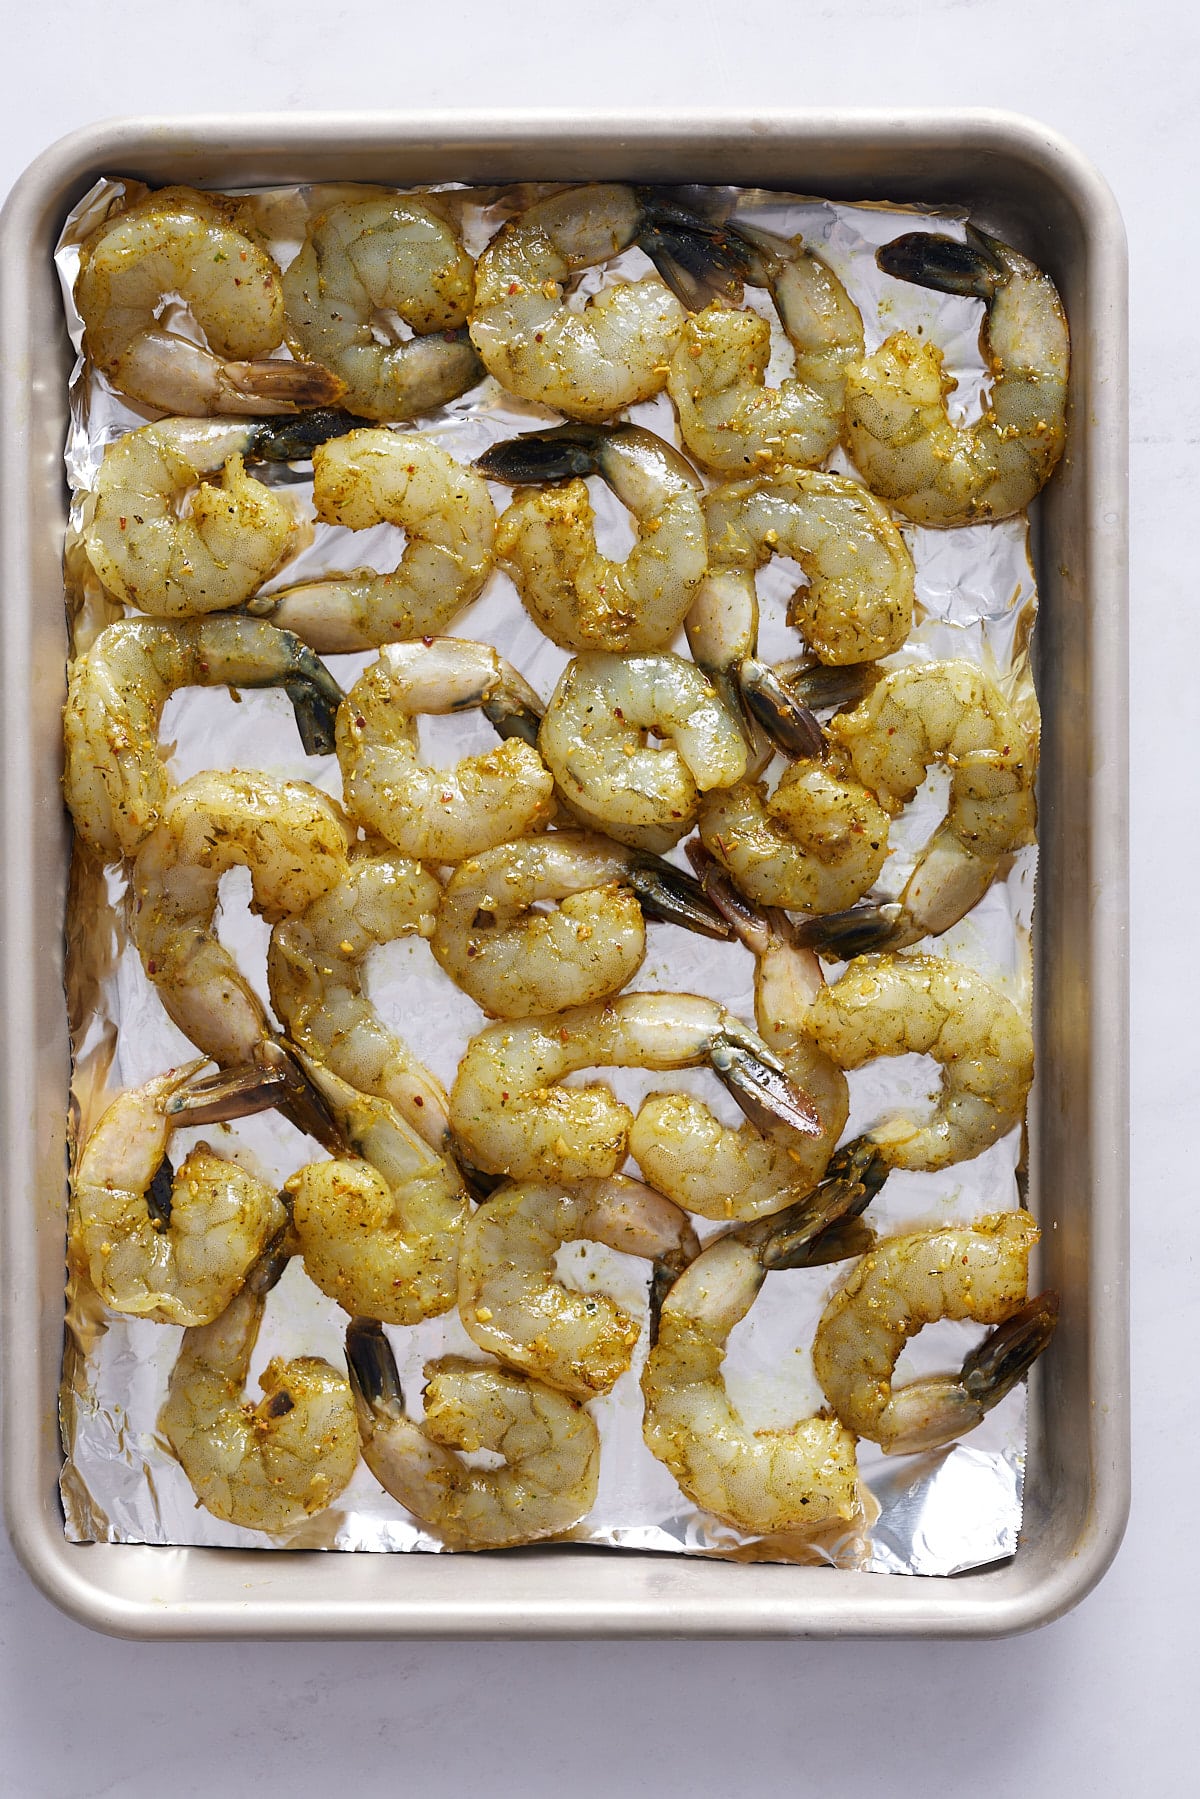 raw and seasoned shrimp on baking sheet